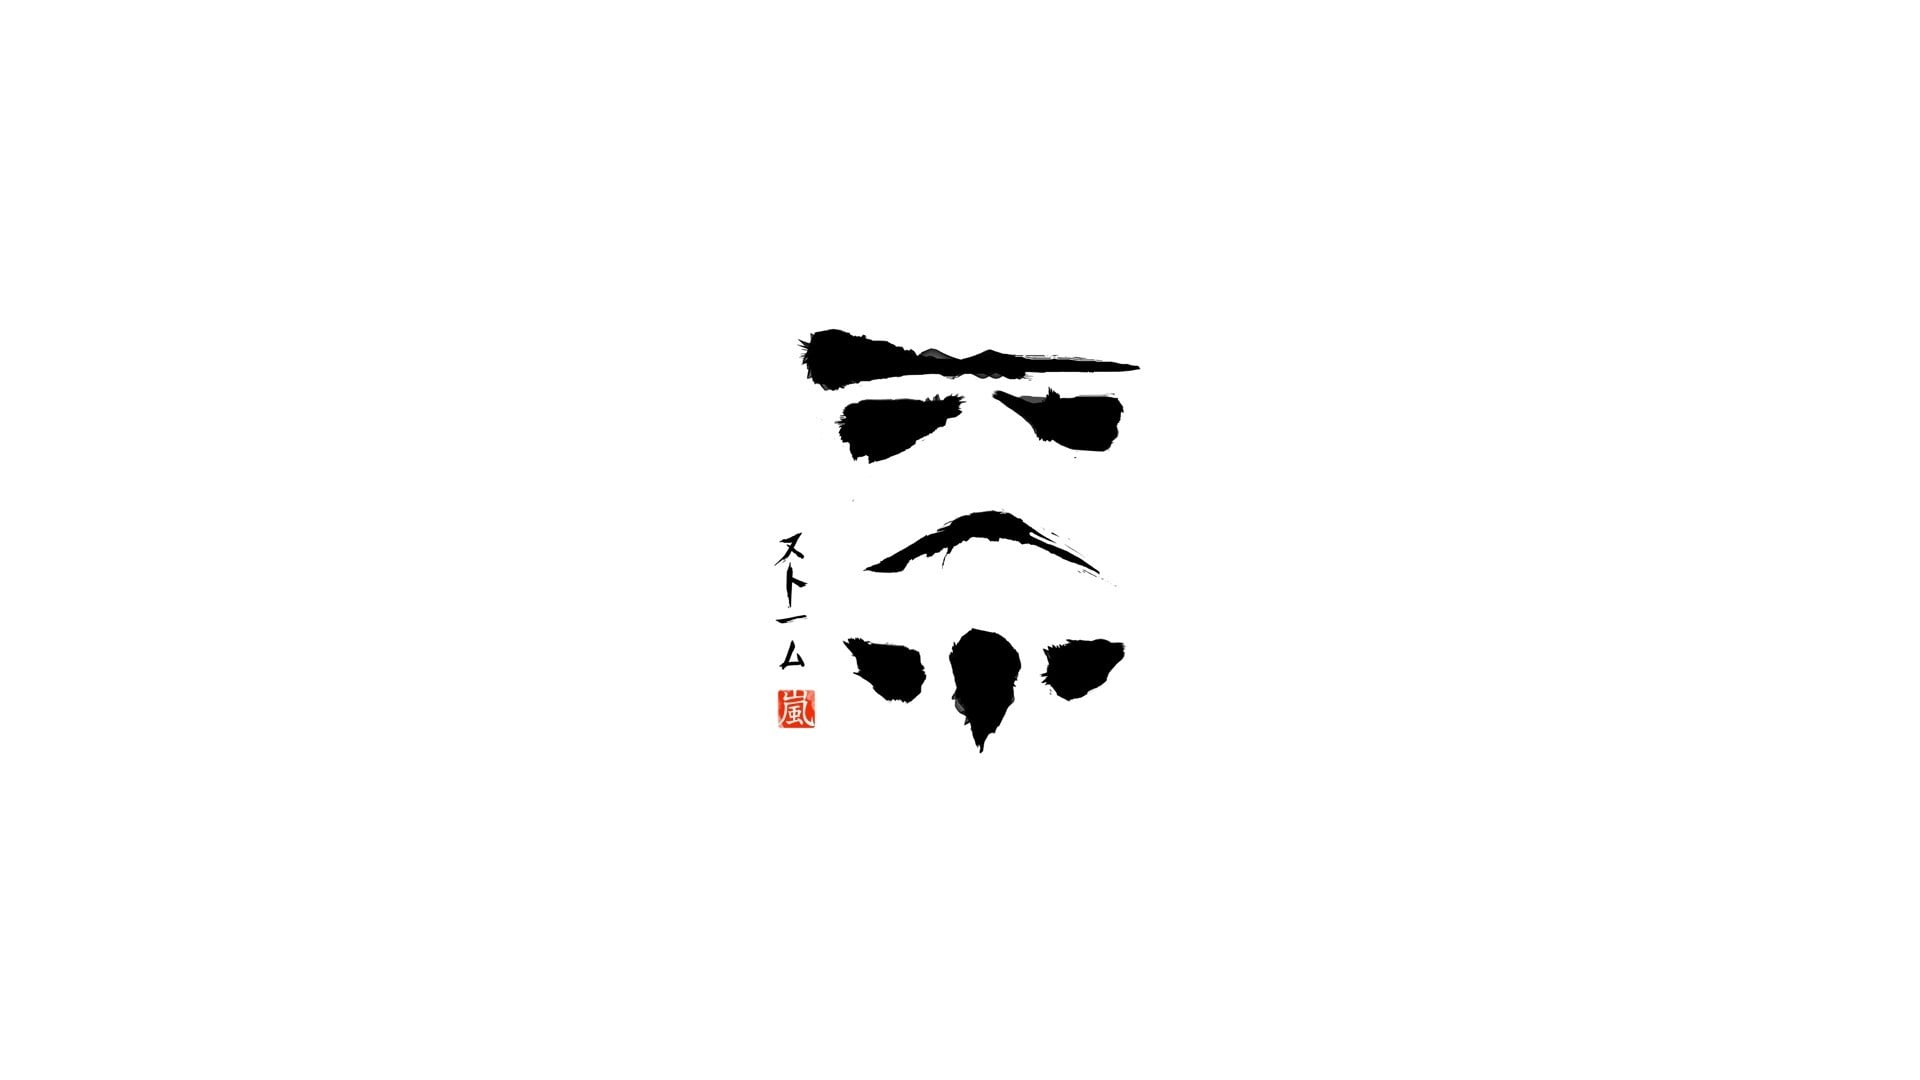 Star Wars Stormtrooper vector art, minimalism, symbol, illustration